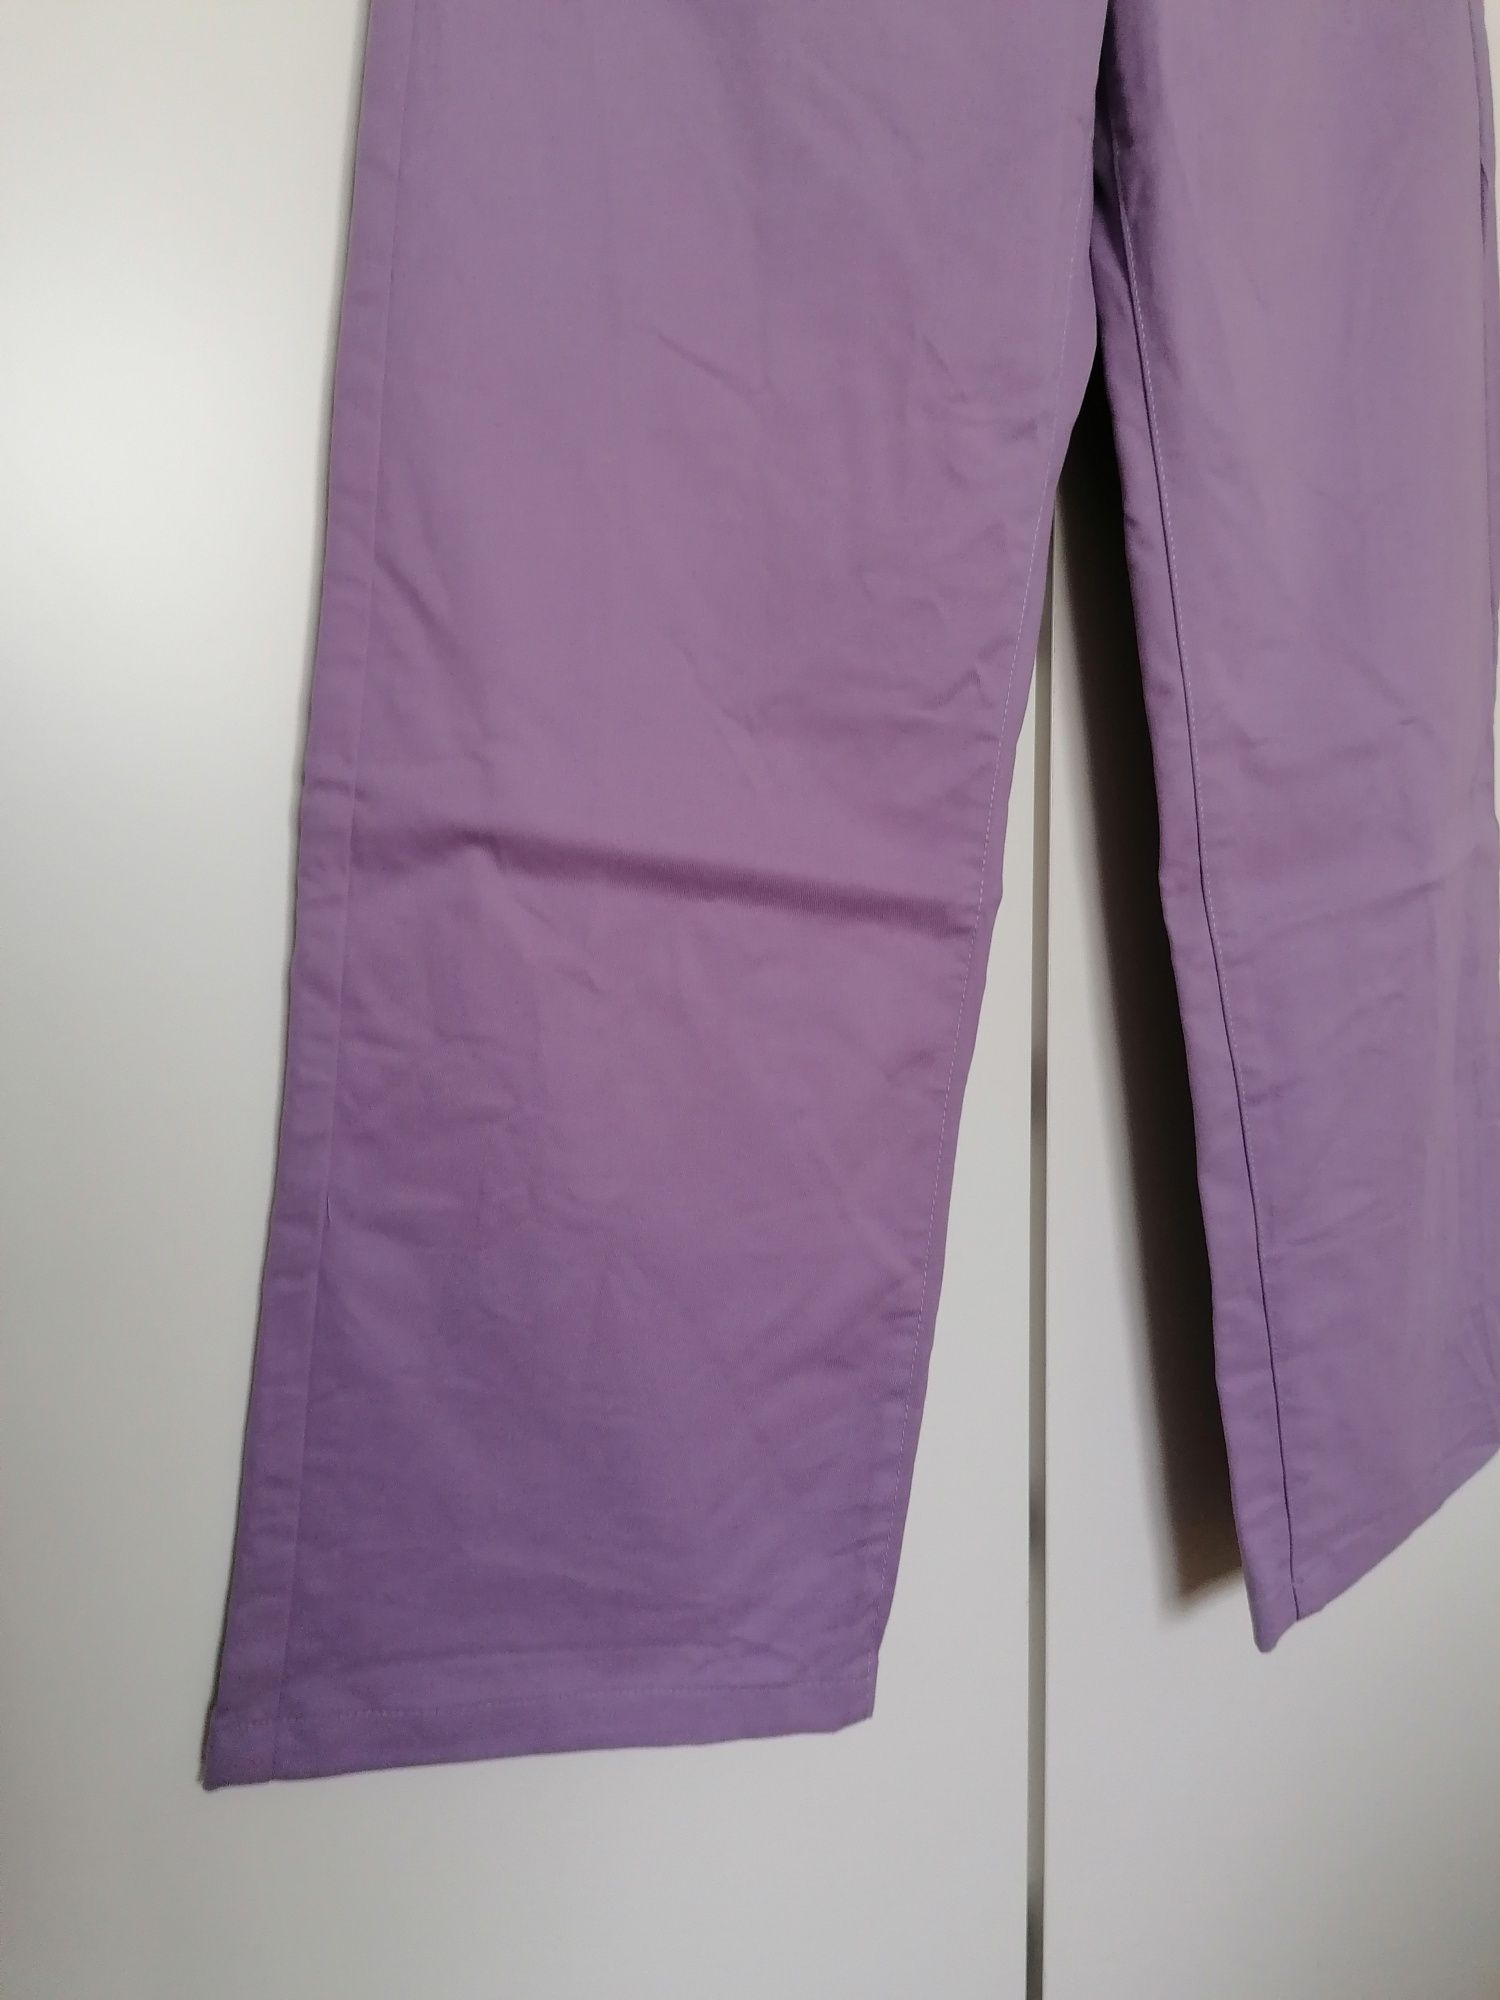 Calças retas lilás, tamanho 40